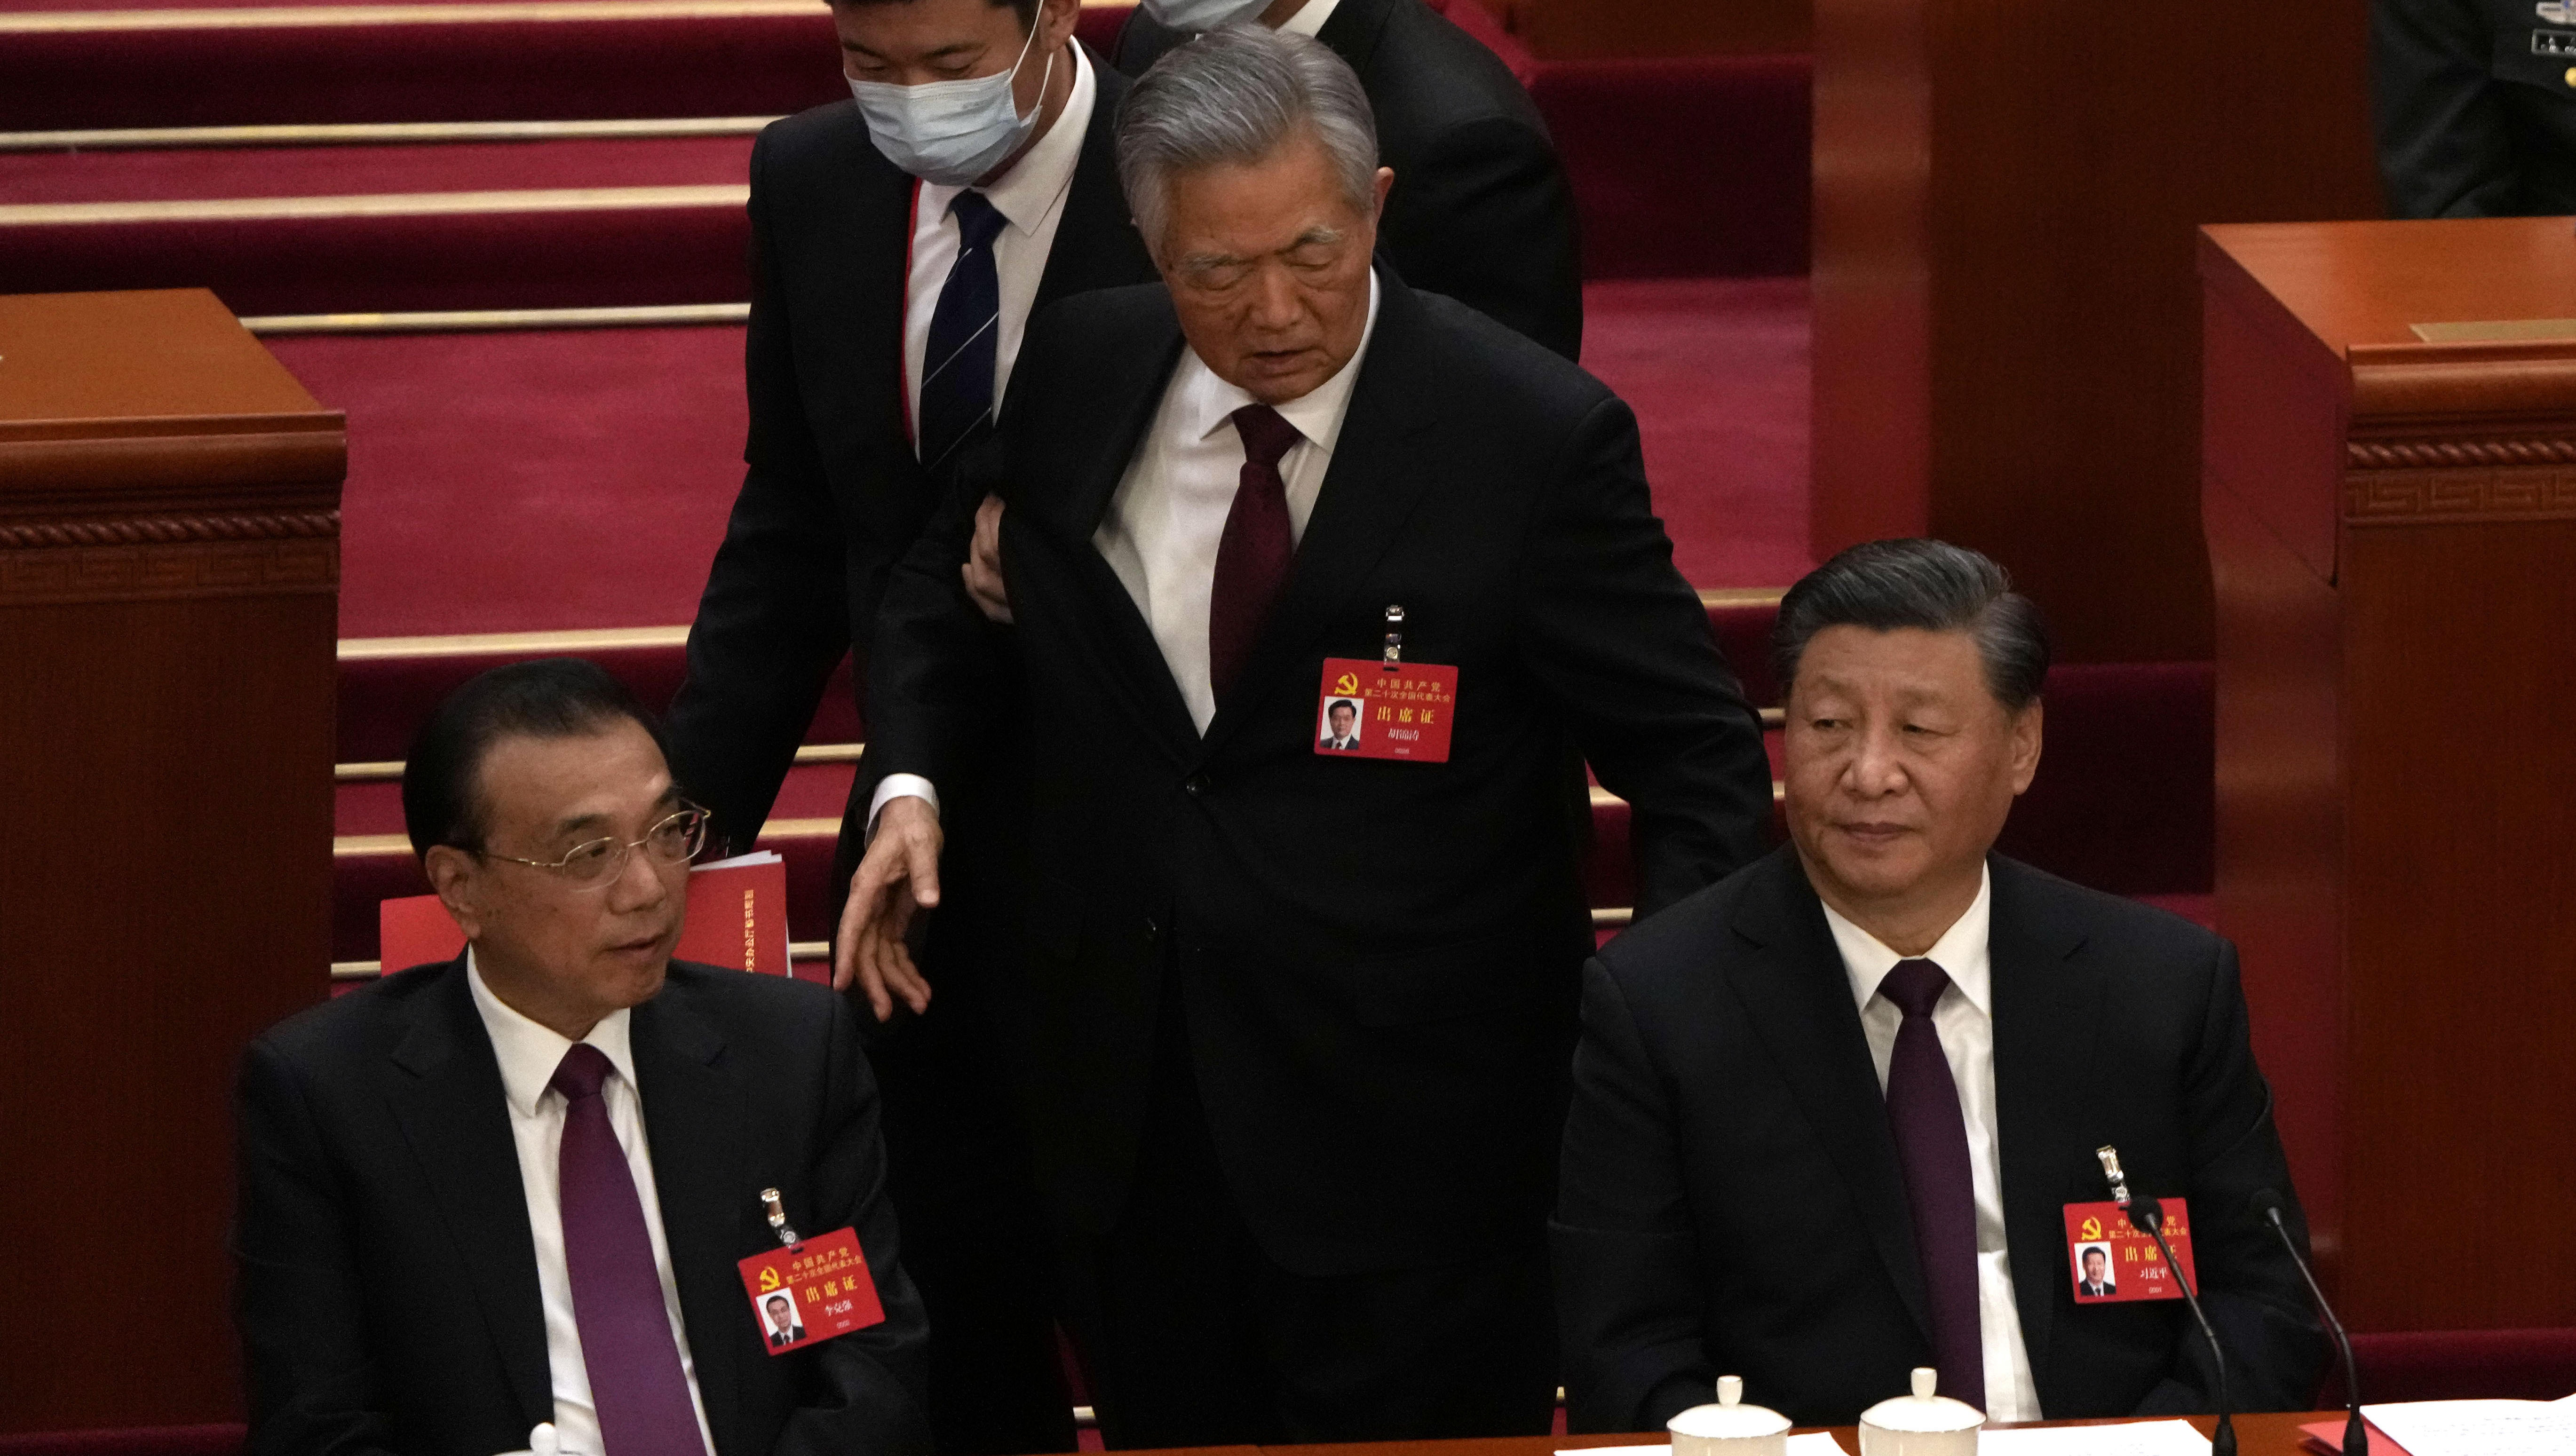 Parteitag in China: Ex-Parteichef Hu wird von Bühne entfernt